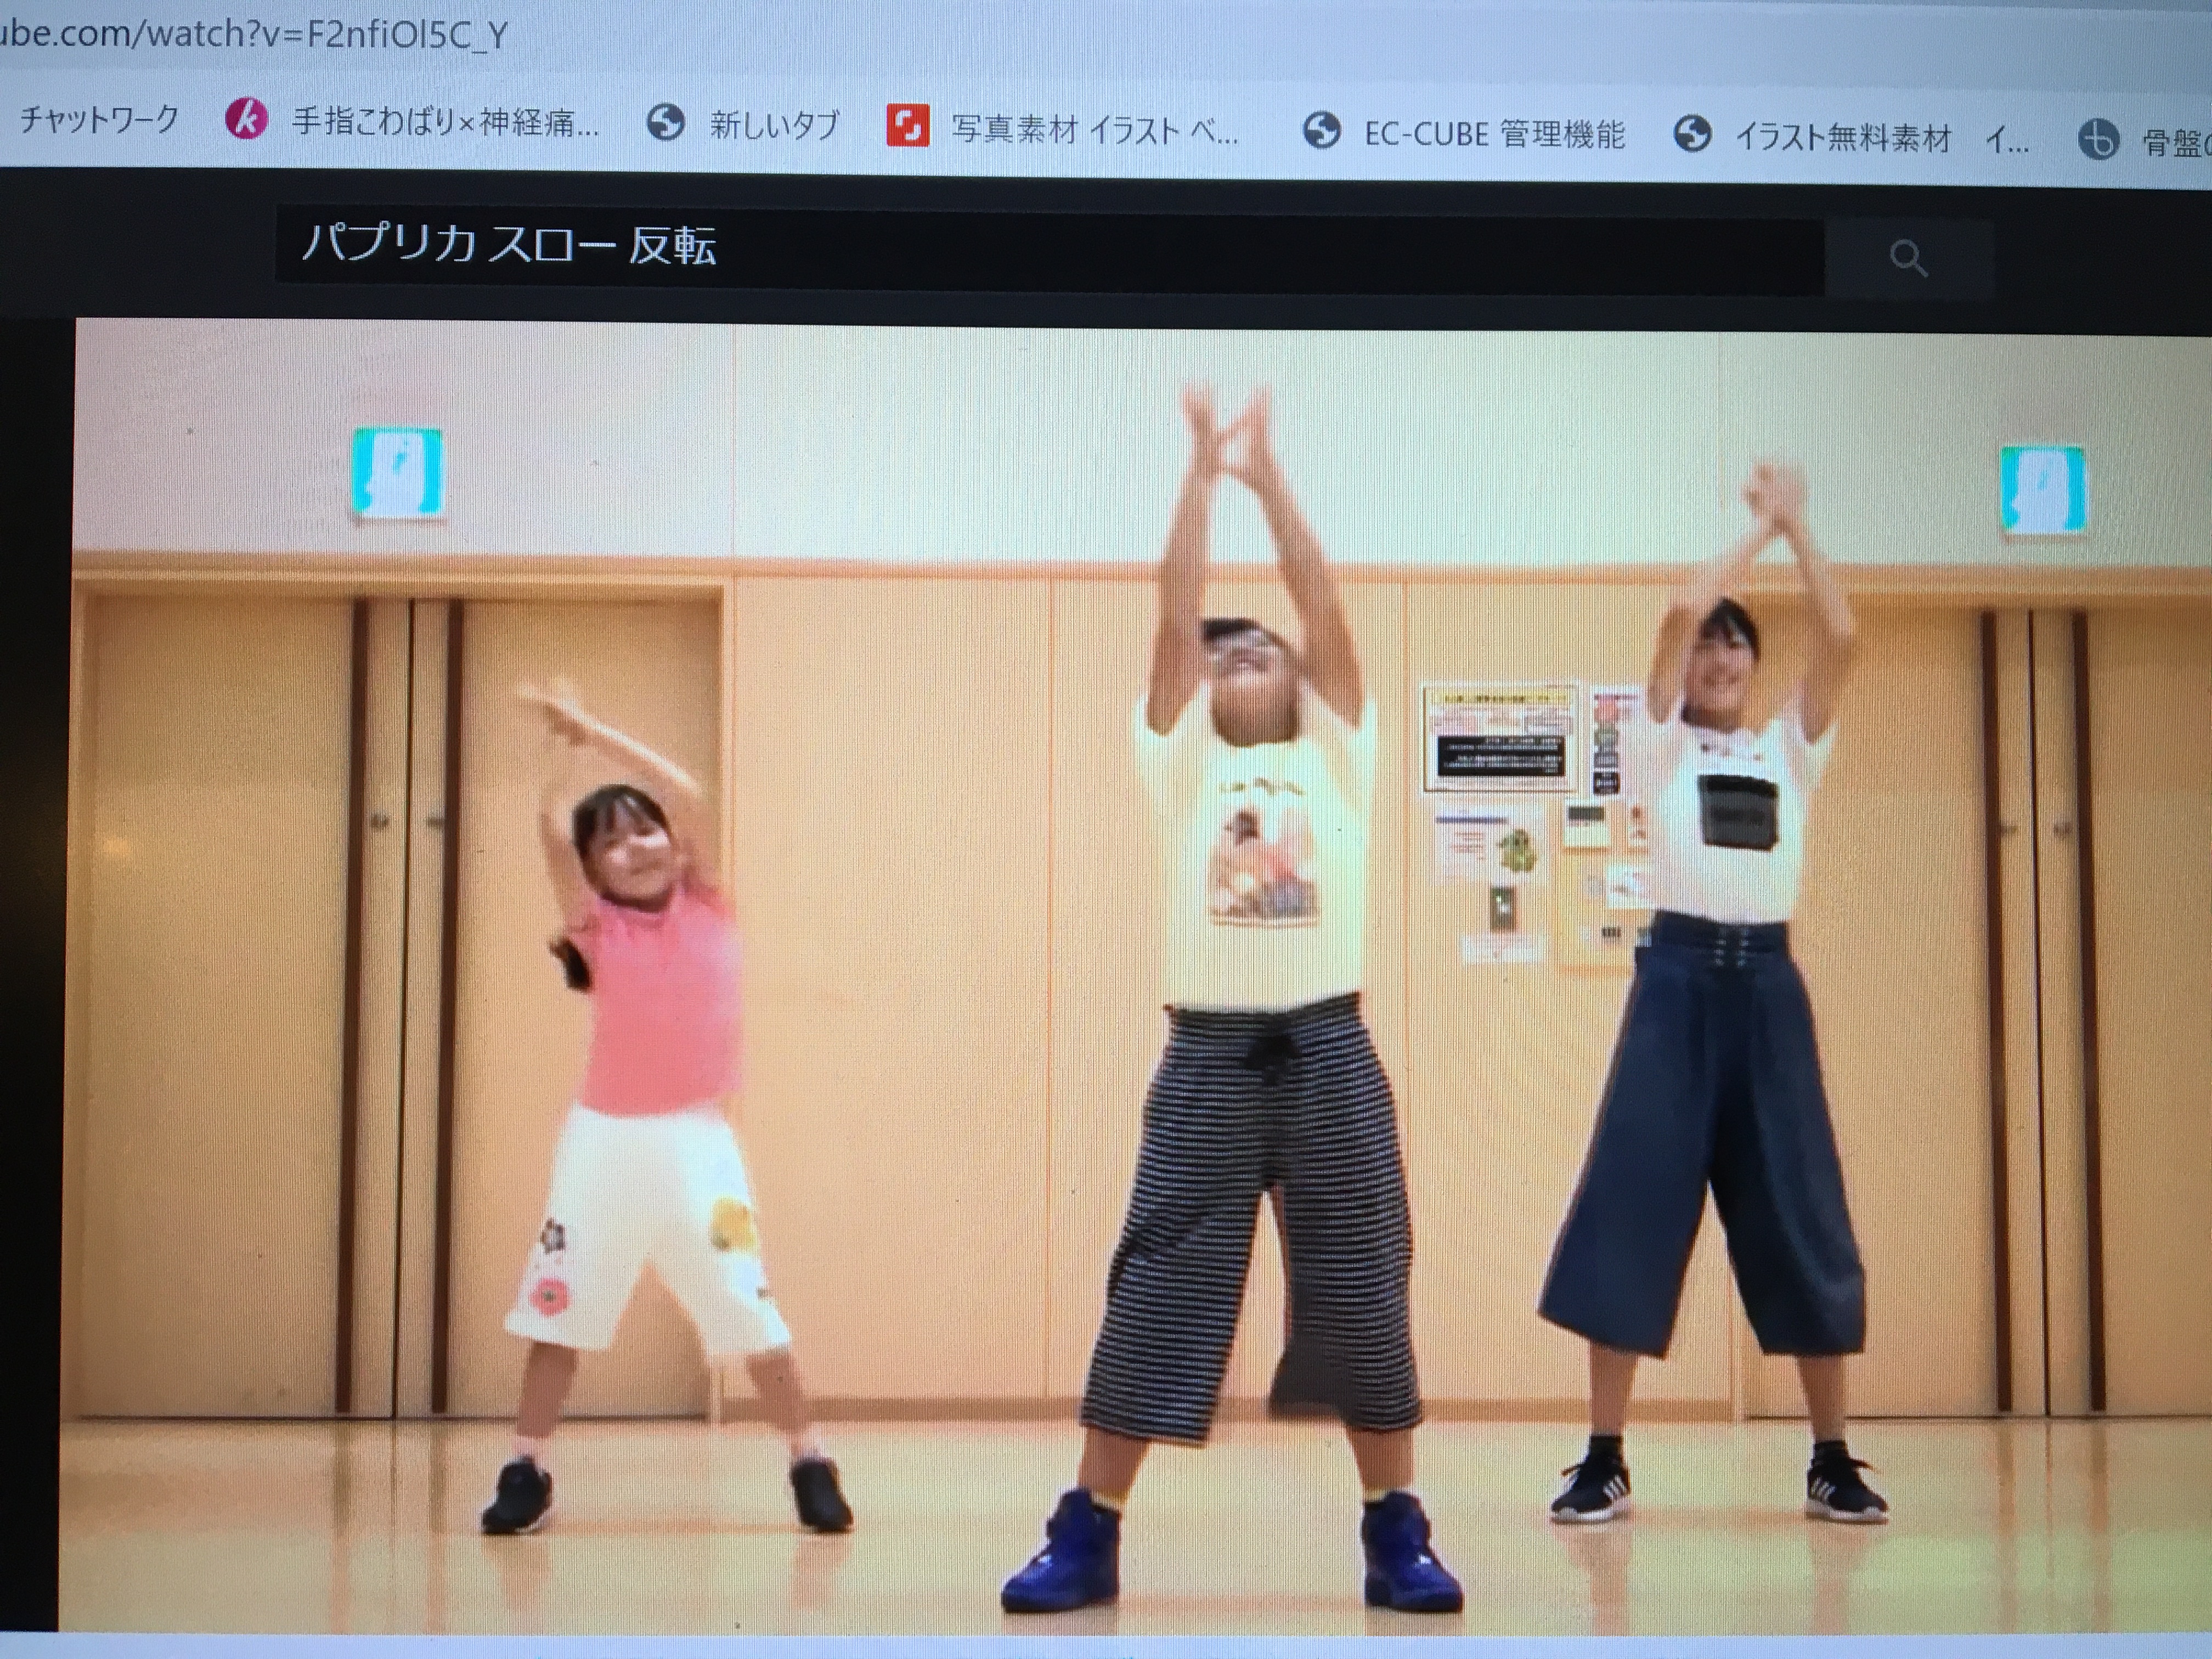 パプリカ反転 パプリカのダンスを完全習得 子供でも踊れる簡単な振り付け動画をまとめてみたよ